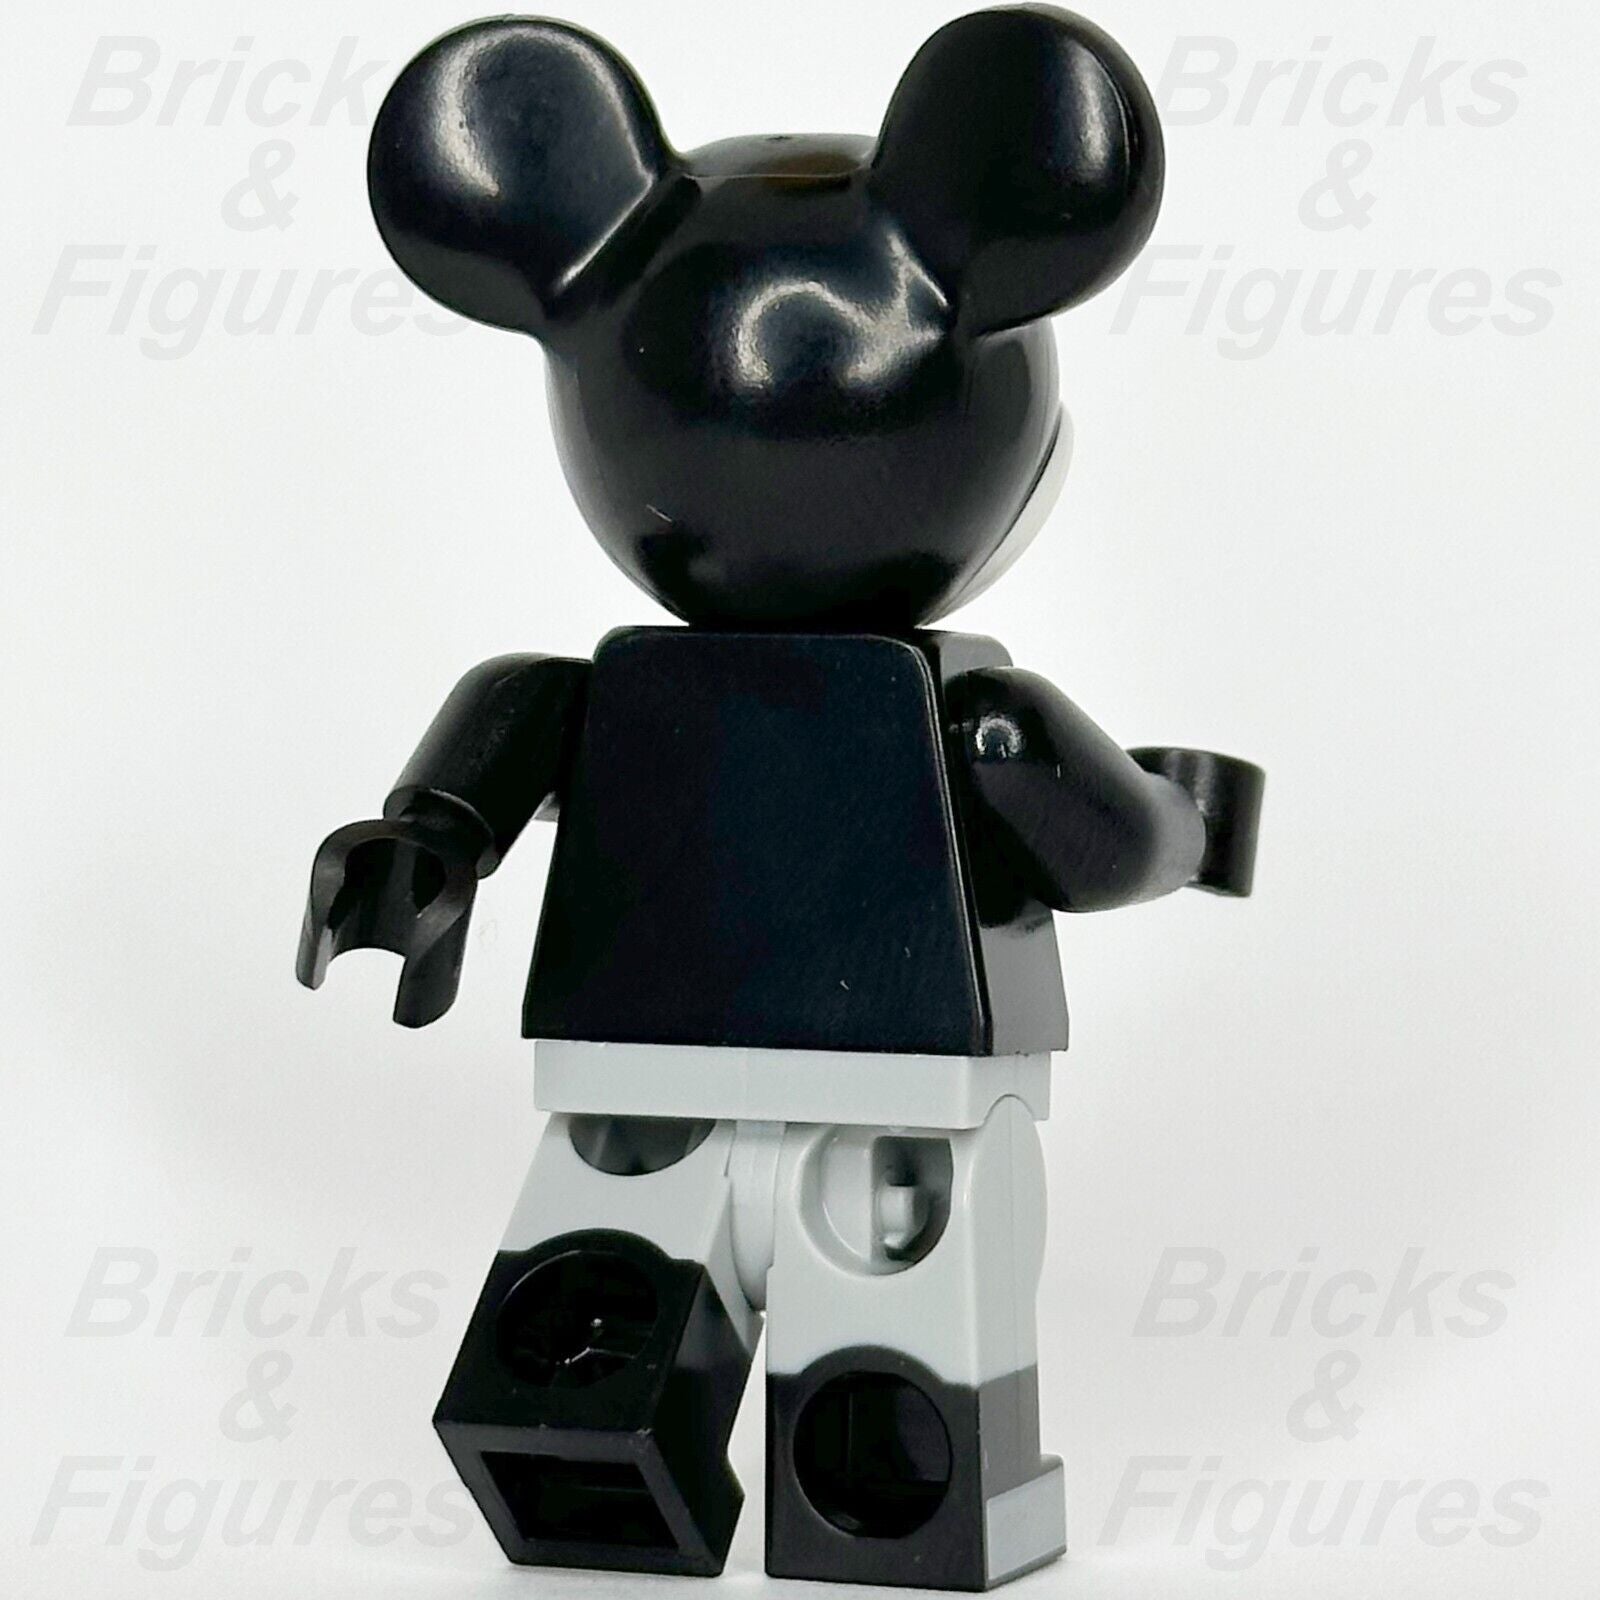 LEGO Disney Mickey Mouse Minifigure Vintage Black & White Classic 43230 dis142